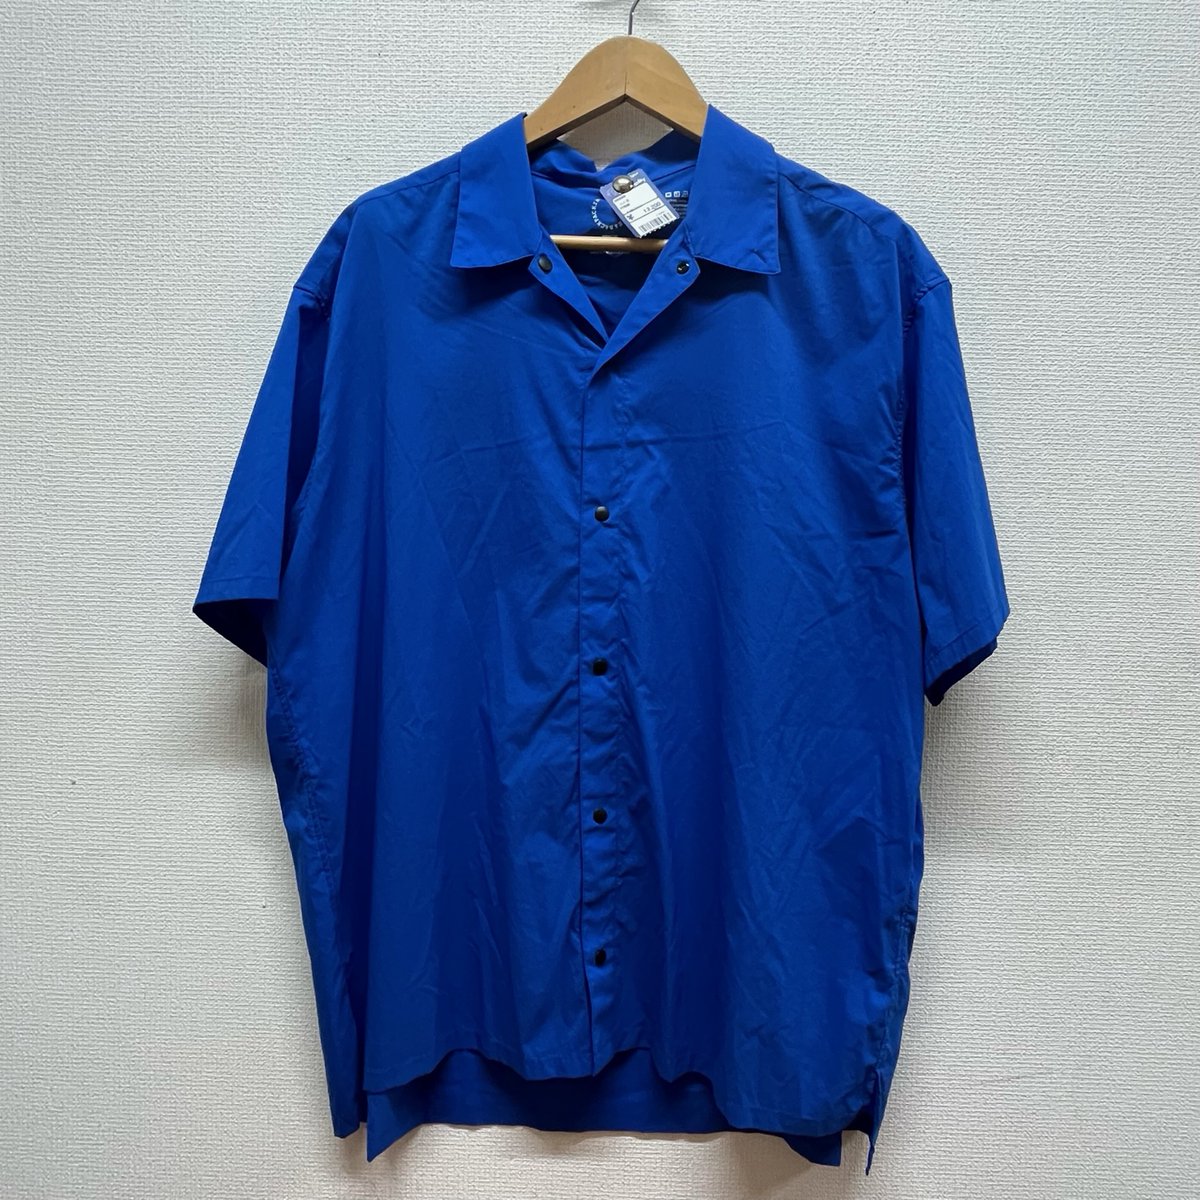 ドンドンダウン宇都宮鶴田店 on Twitter: "今日のオススメ💁 #山と道 UL Short Sleeve Shirt SIZE XL